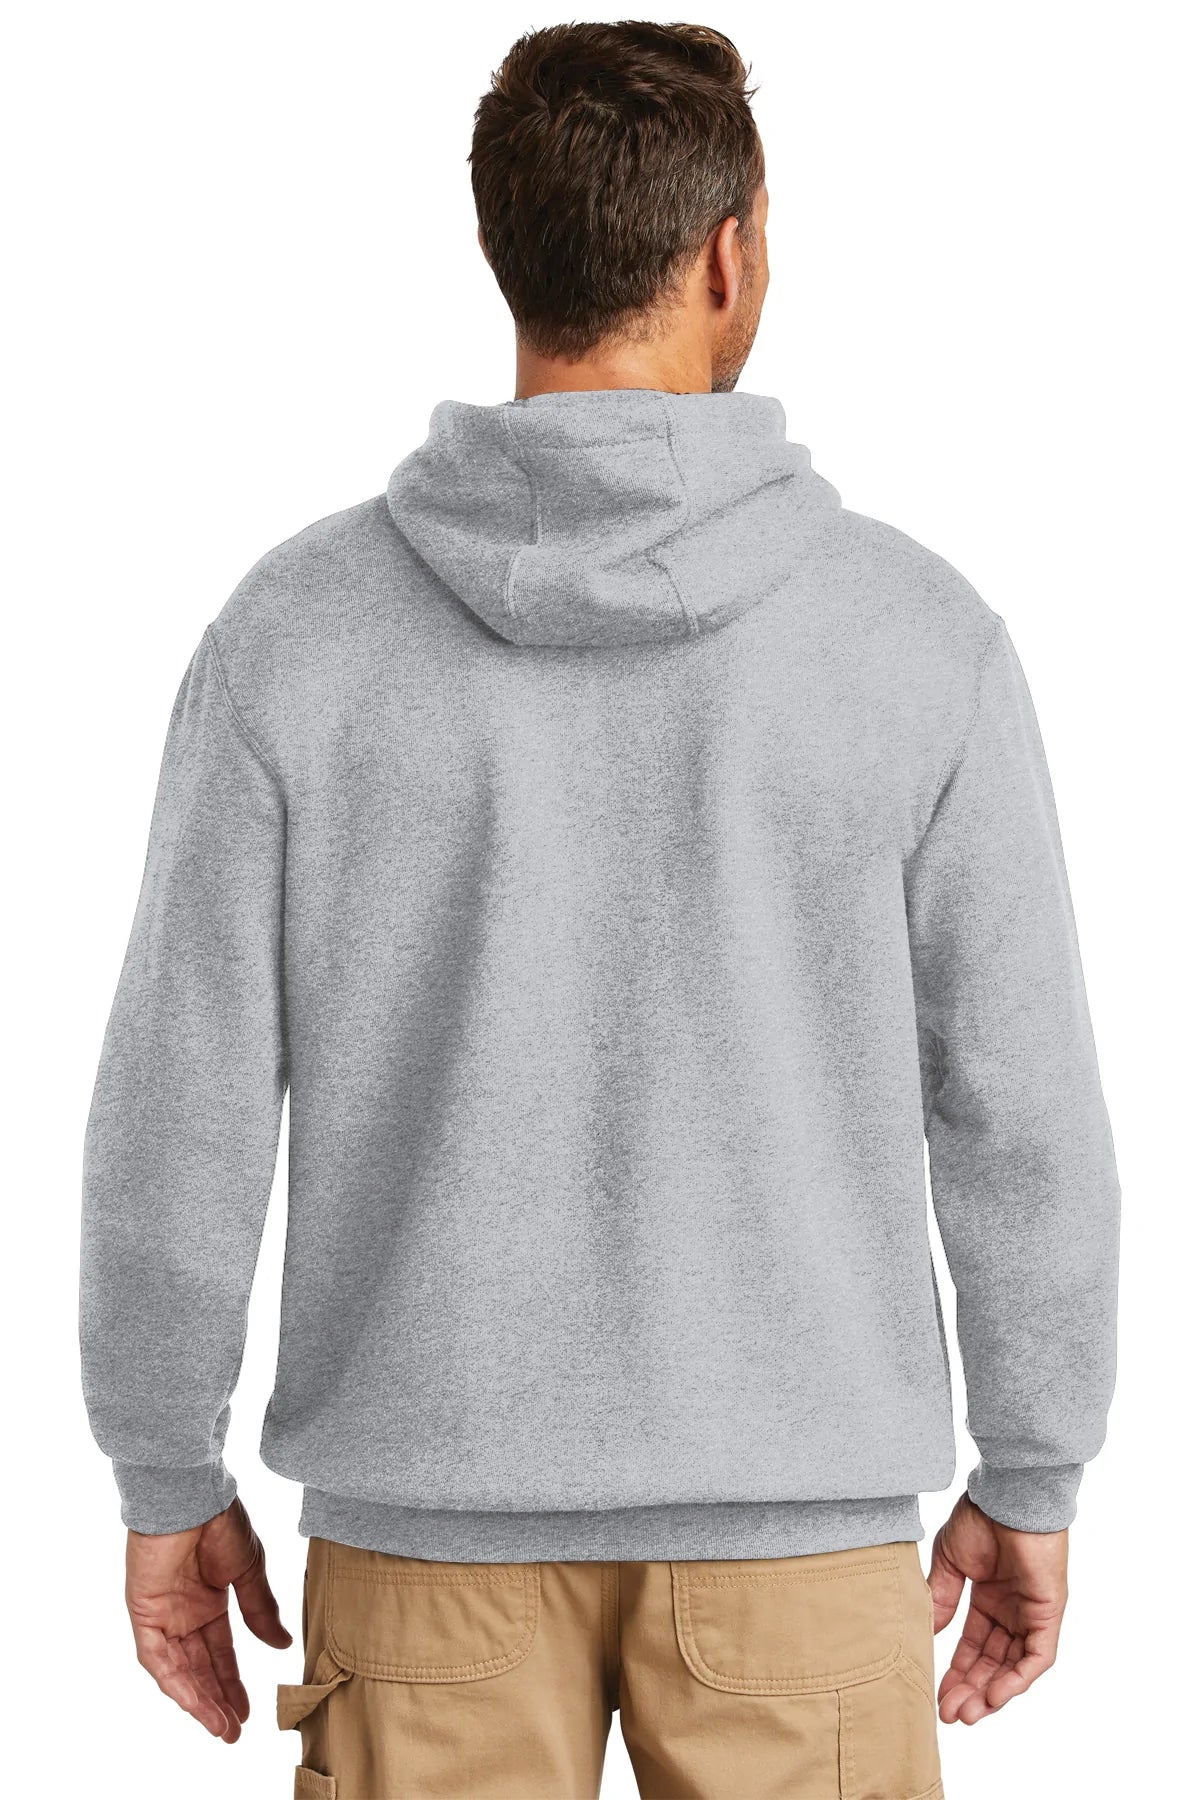 Carhartt Tall Hooded Custom Sweatshirts, Heather Grey